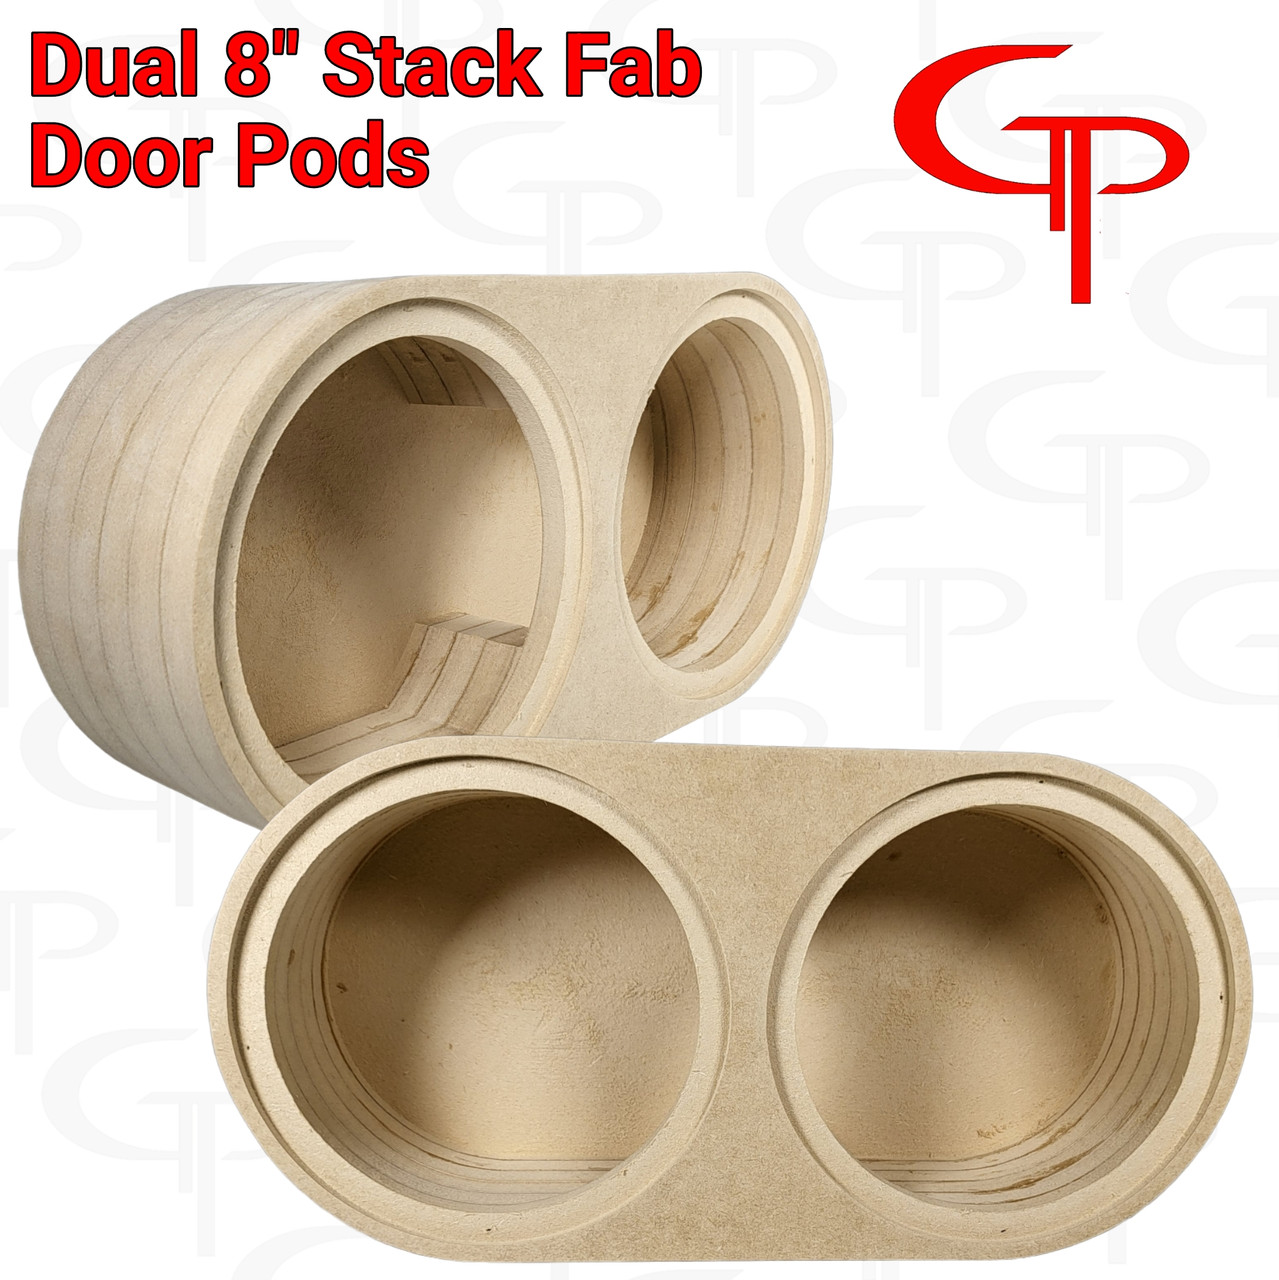 Dual 8" Flush Mount Stack Fab Door Pod Enclosures Customized 